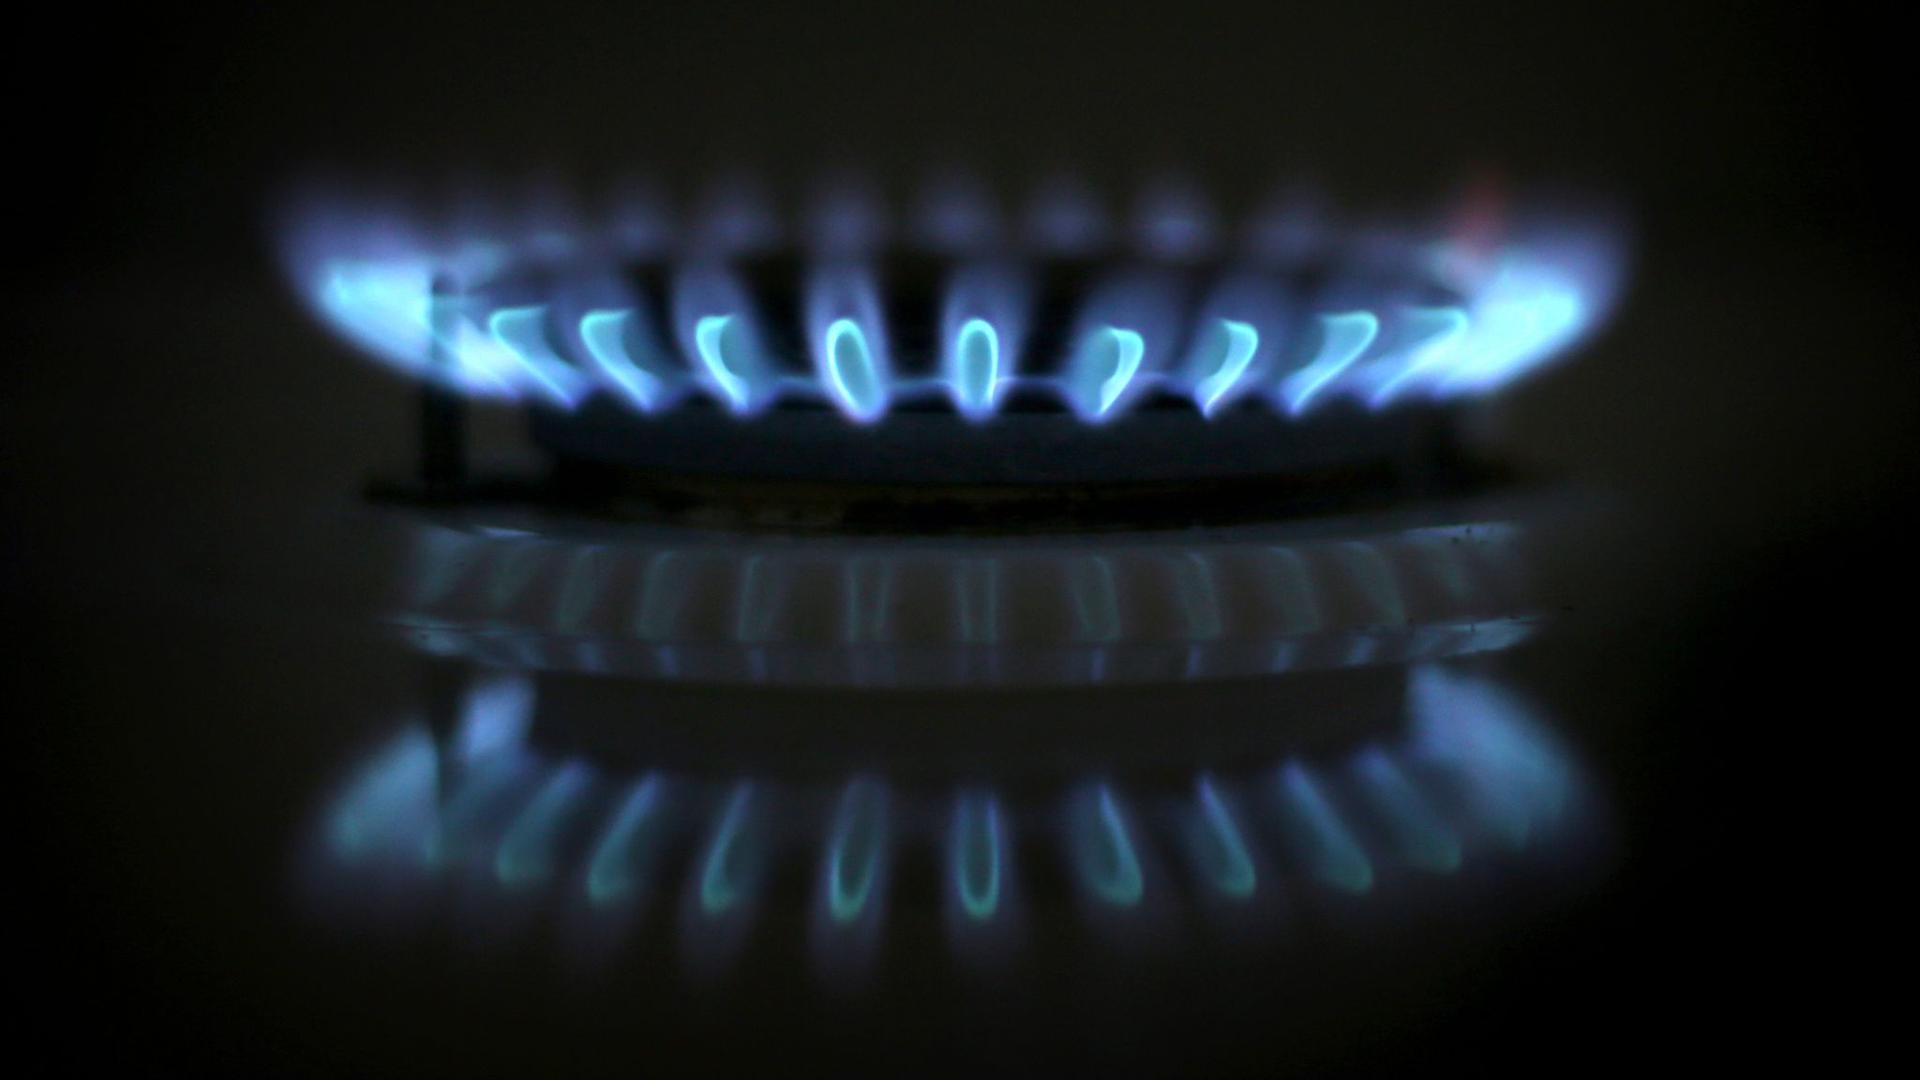 Die Gaslieferungen für den kommenden Winter seien gesichert, so die Bundesregierung. Gleichzeitig müssen sich Verbraucher mit hohen Preisen oder gekündigten Verträgen arrangieren.